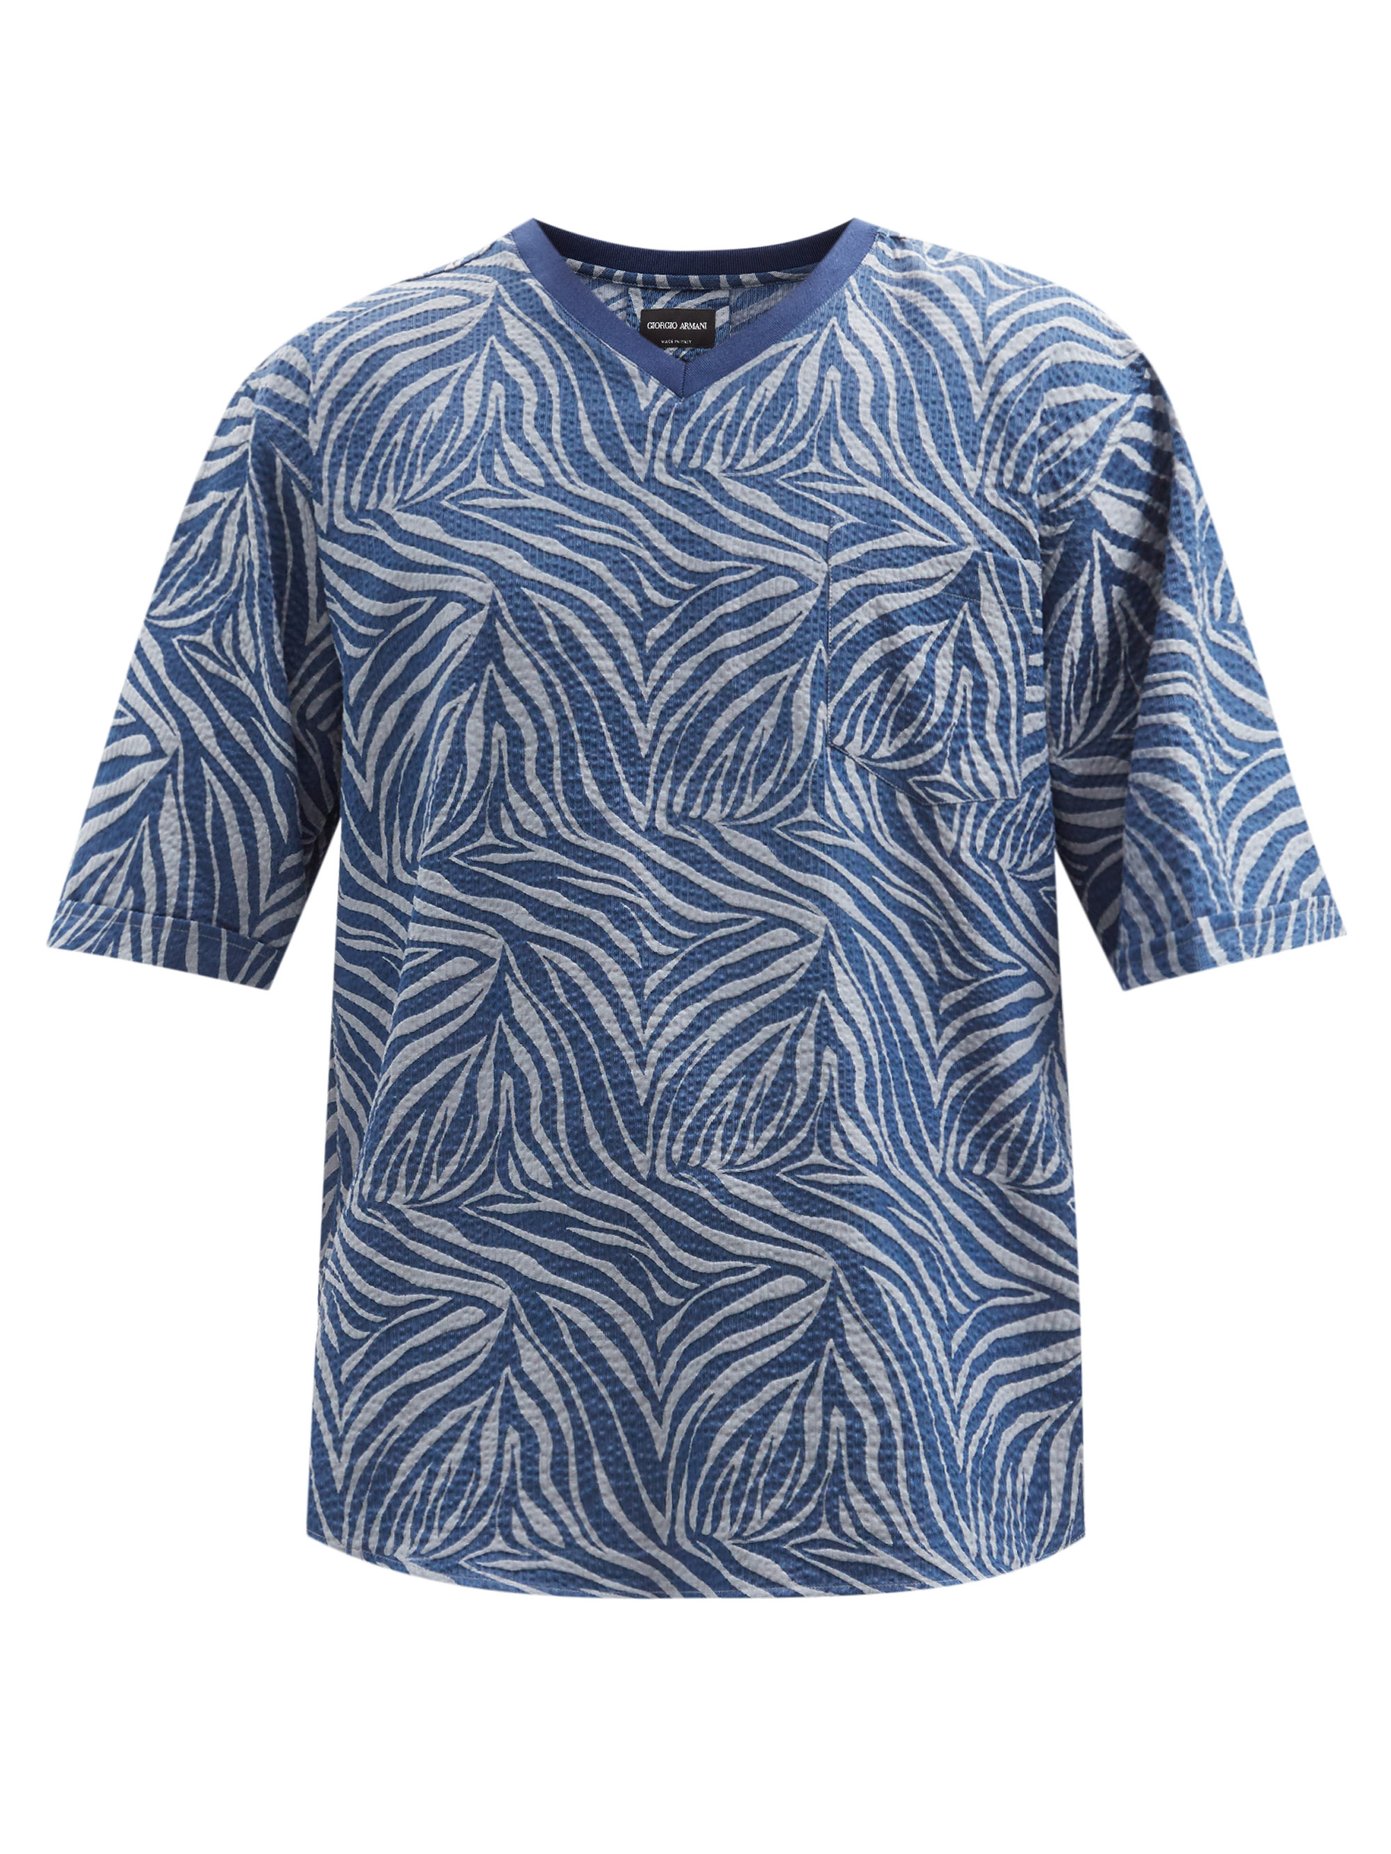 Giorgio Armani ジョルジオ アルマーニ シャークスキンジャカード コットンシアサッカー Tシャツ Matchesfashion マッチズファッション